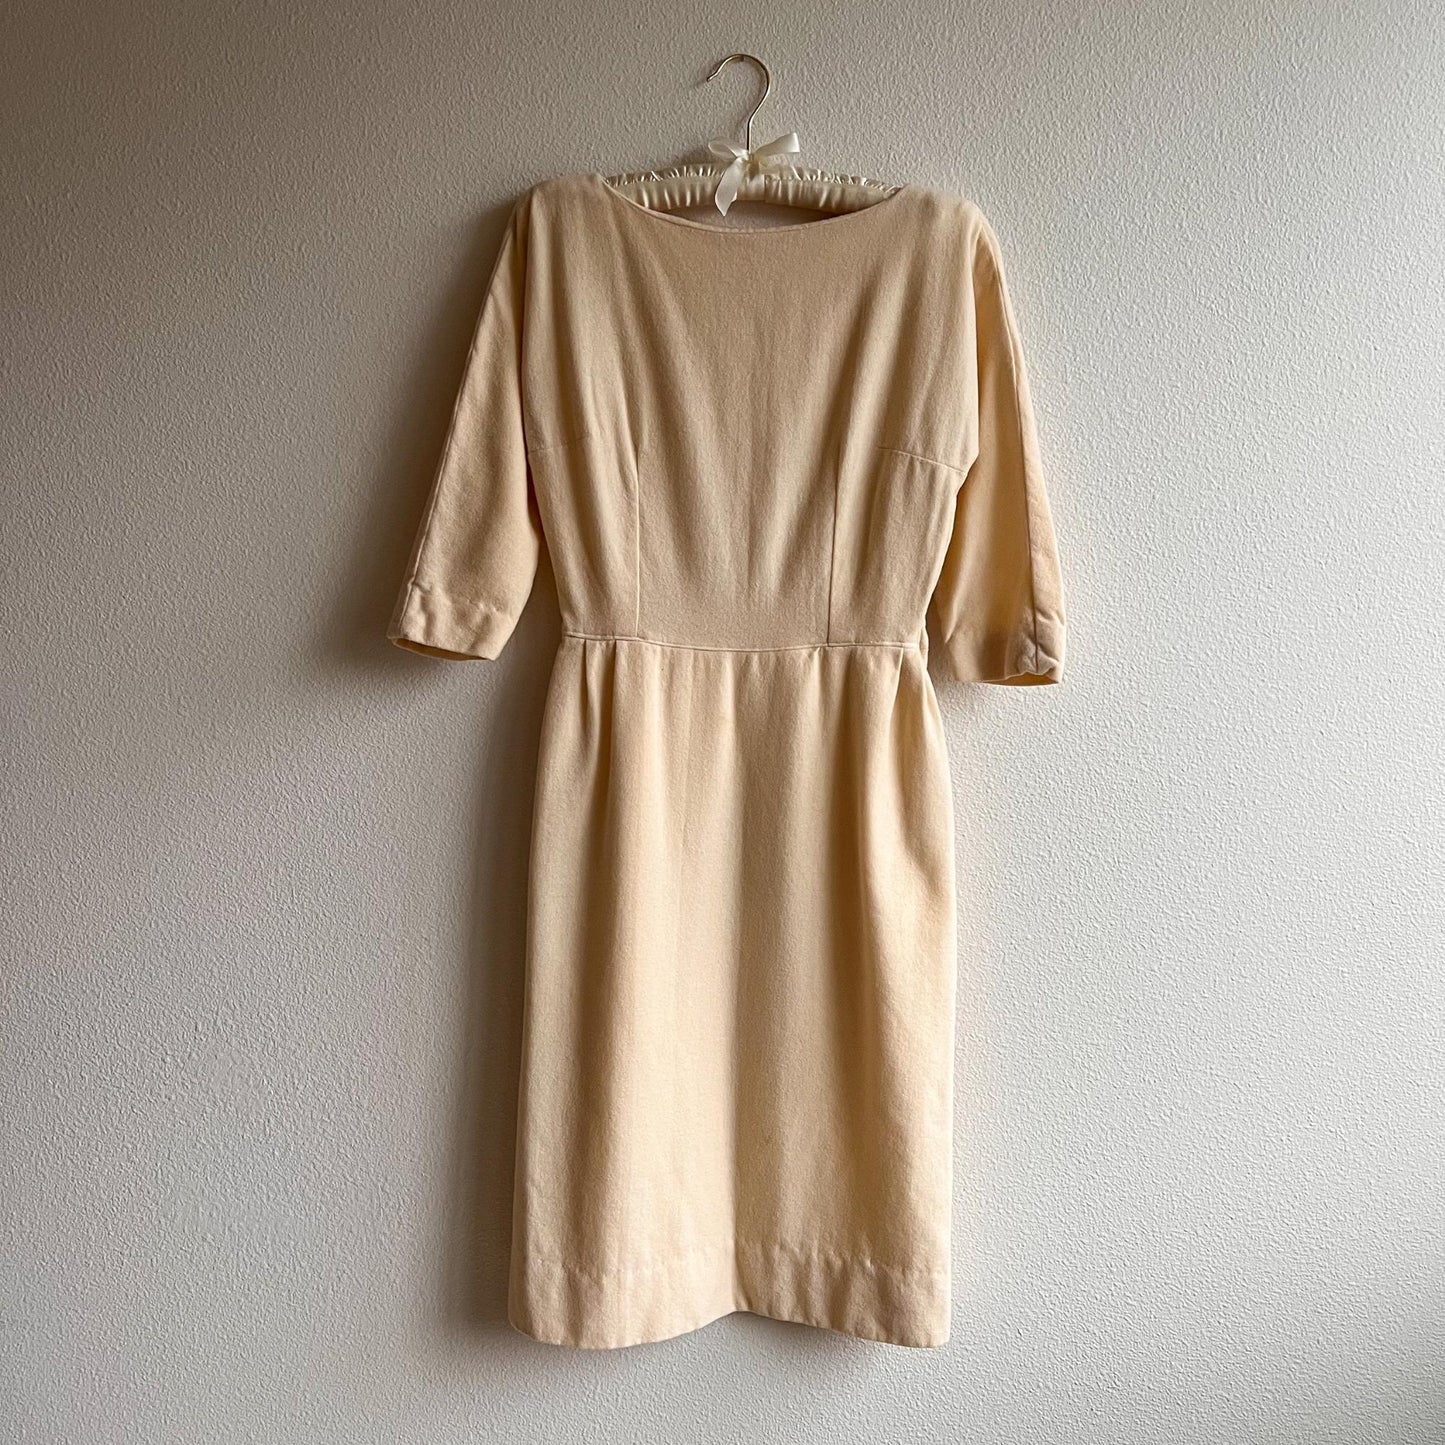 1950s Ivory Wool Sheath Dress (XS/S)